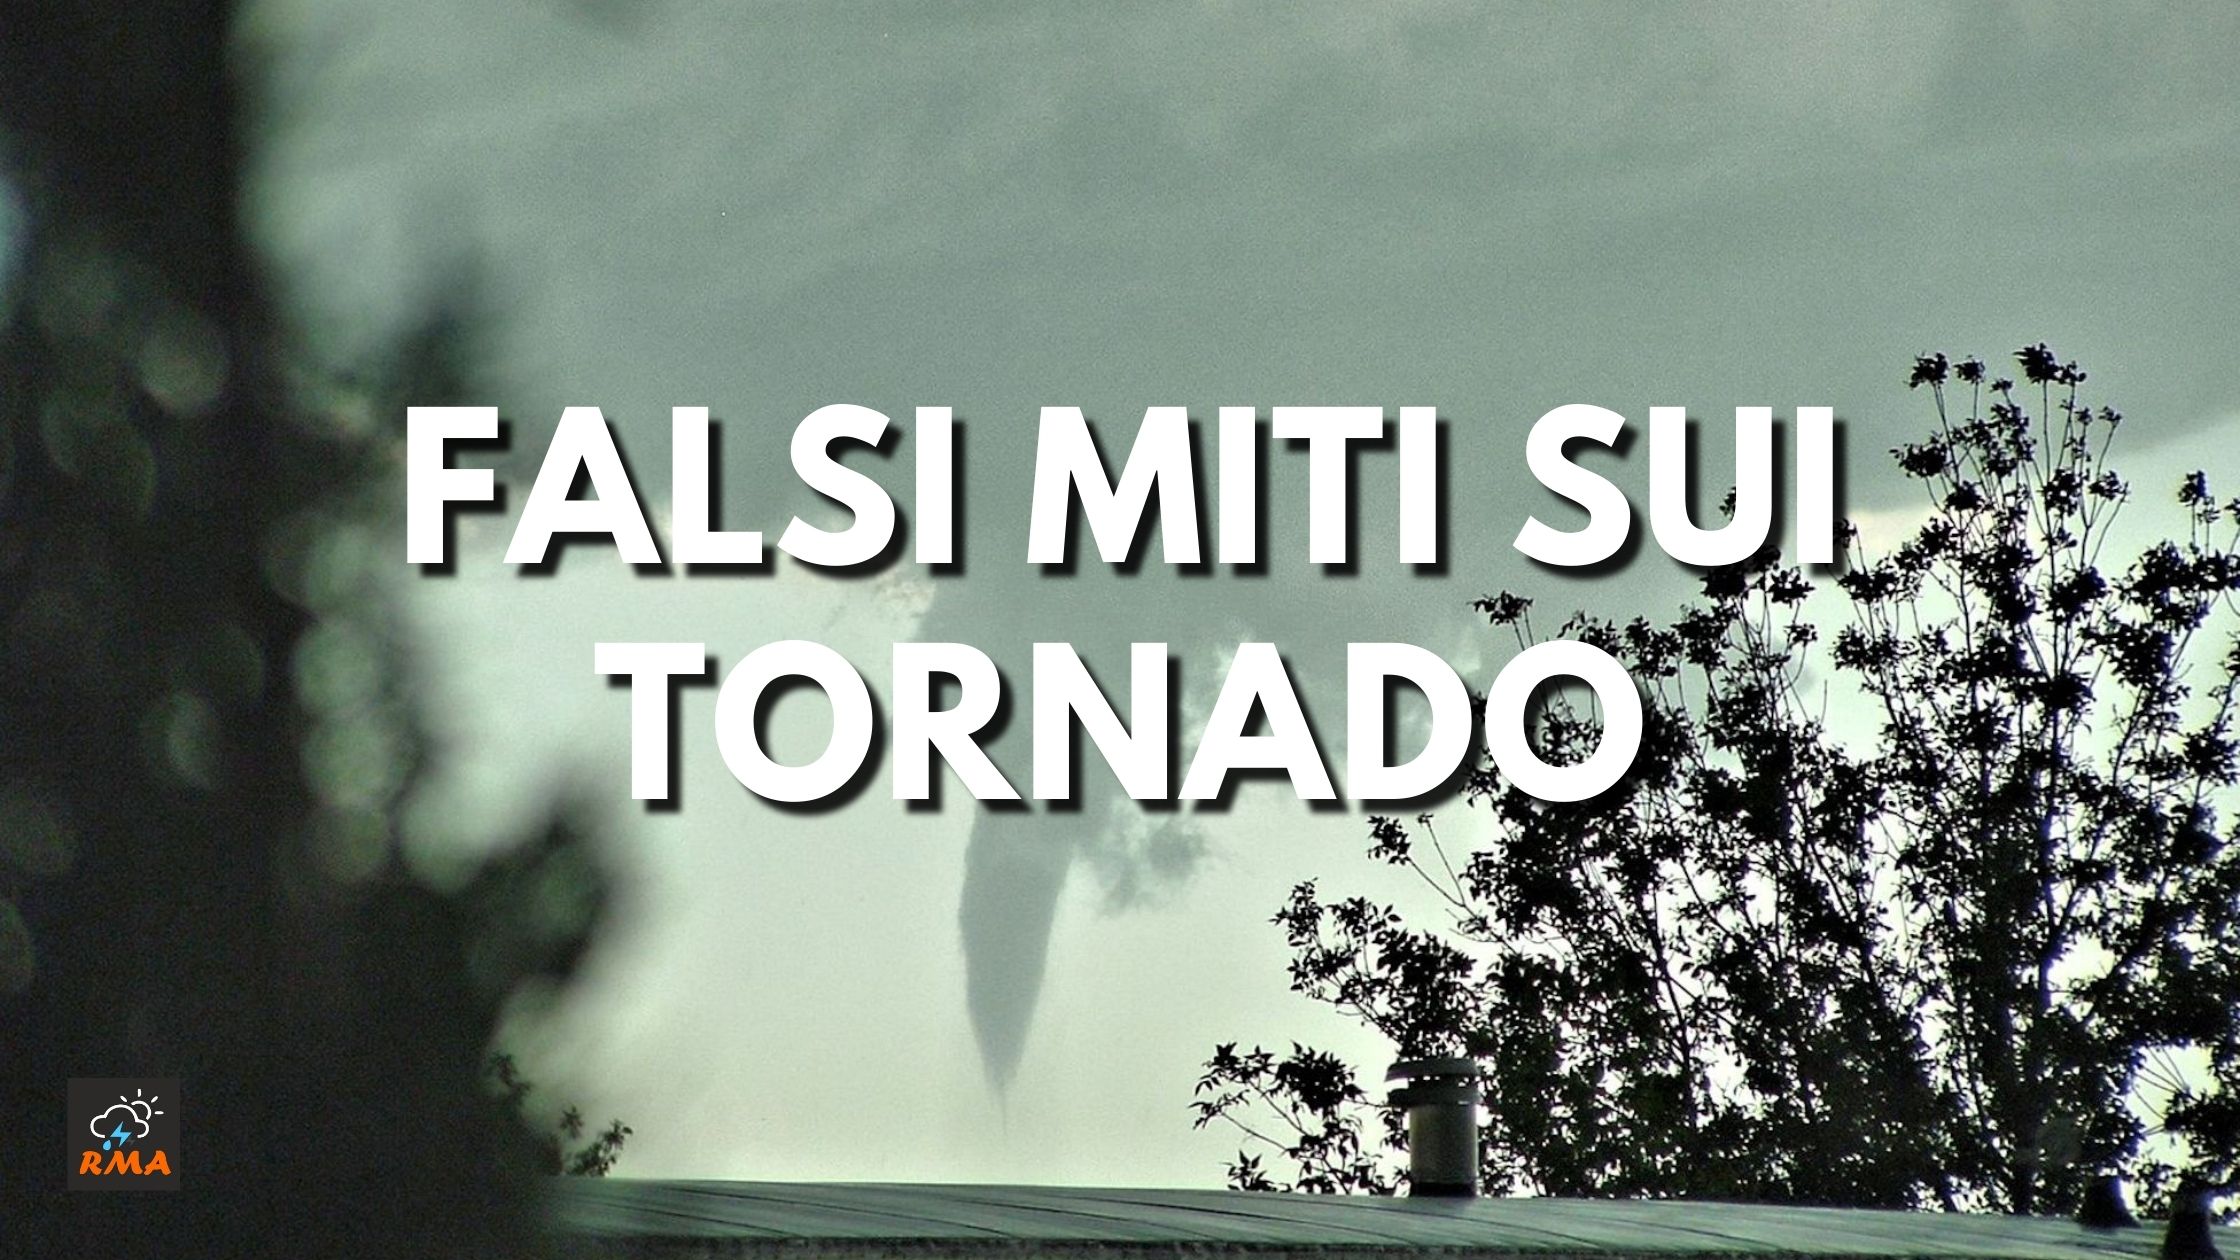 Falsi miti sui tornado